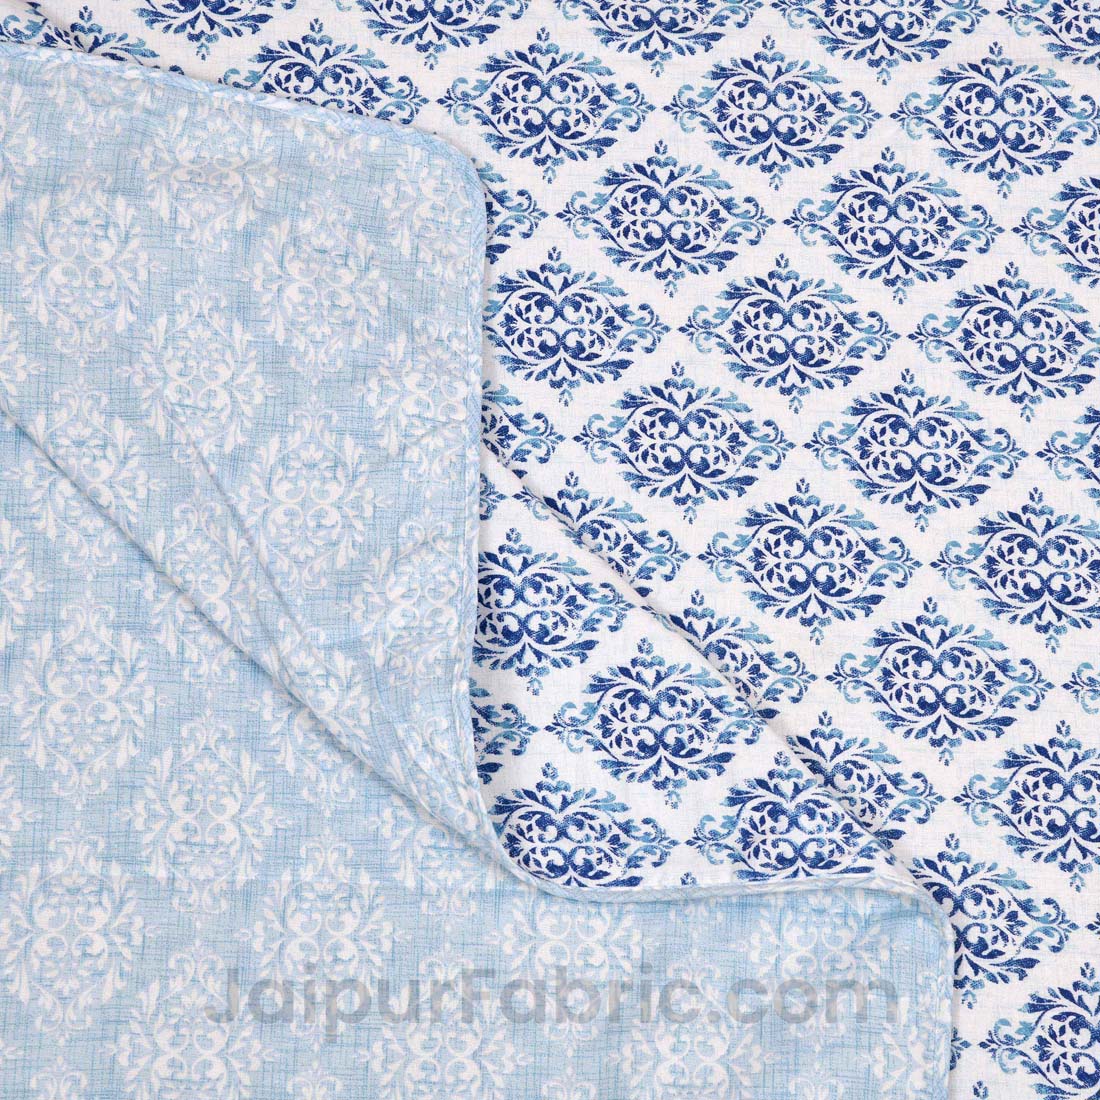 JaipurFabric® Blue Ethnic Double Bed Reversible Dohar